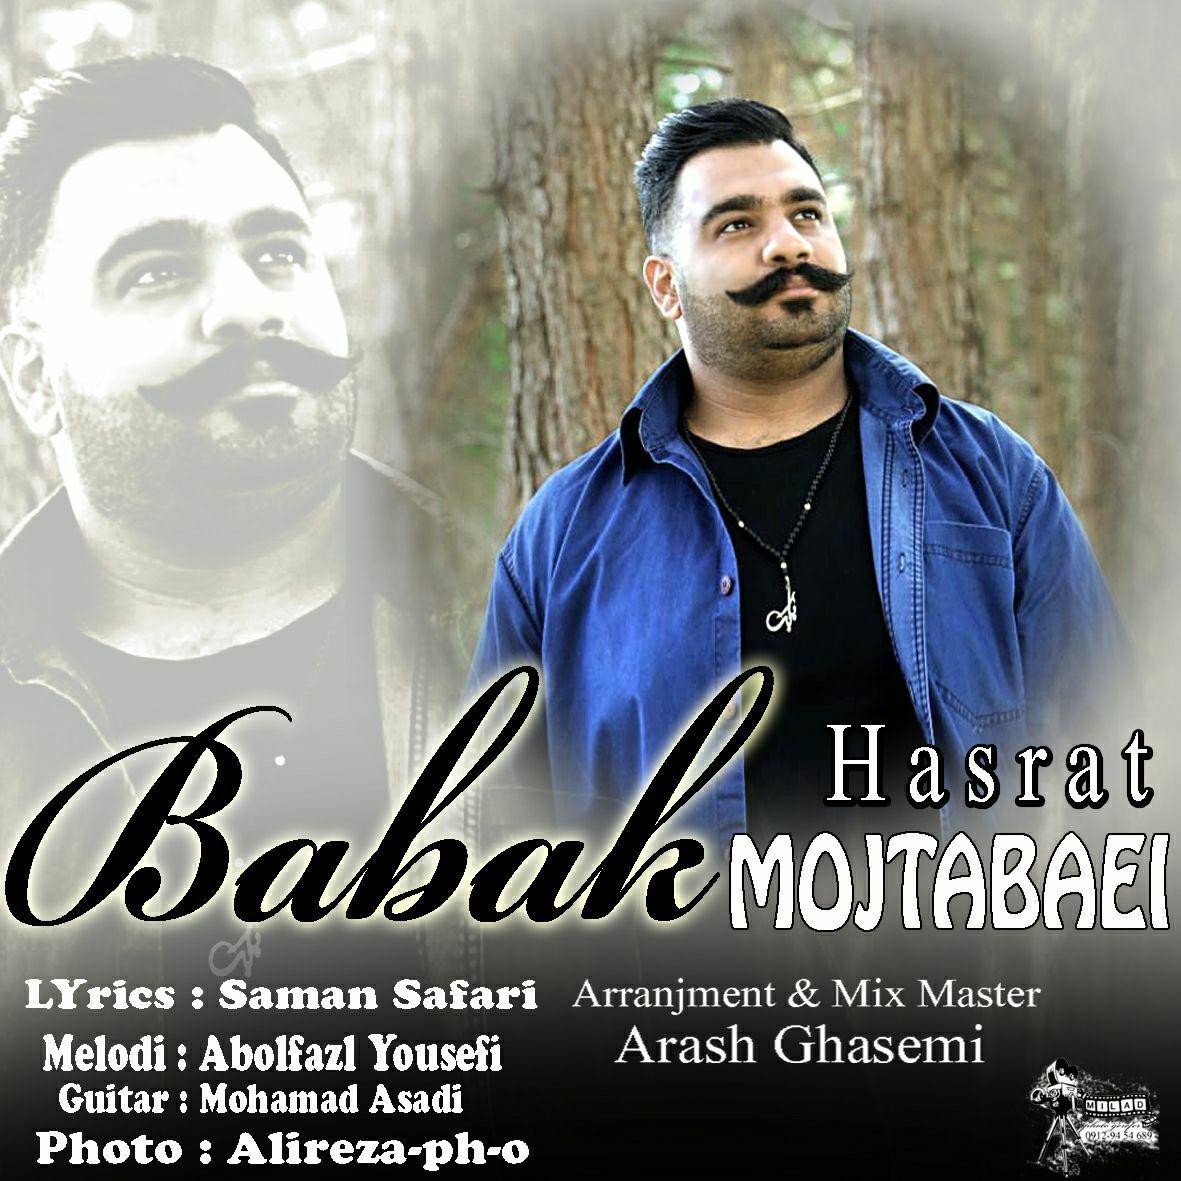  دانلود آهنگ جدید بابک مجتبایی - حسرت | Download New Music By Babak Mojtabaei - Hasrat